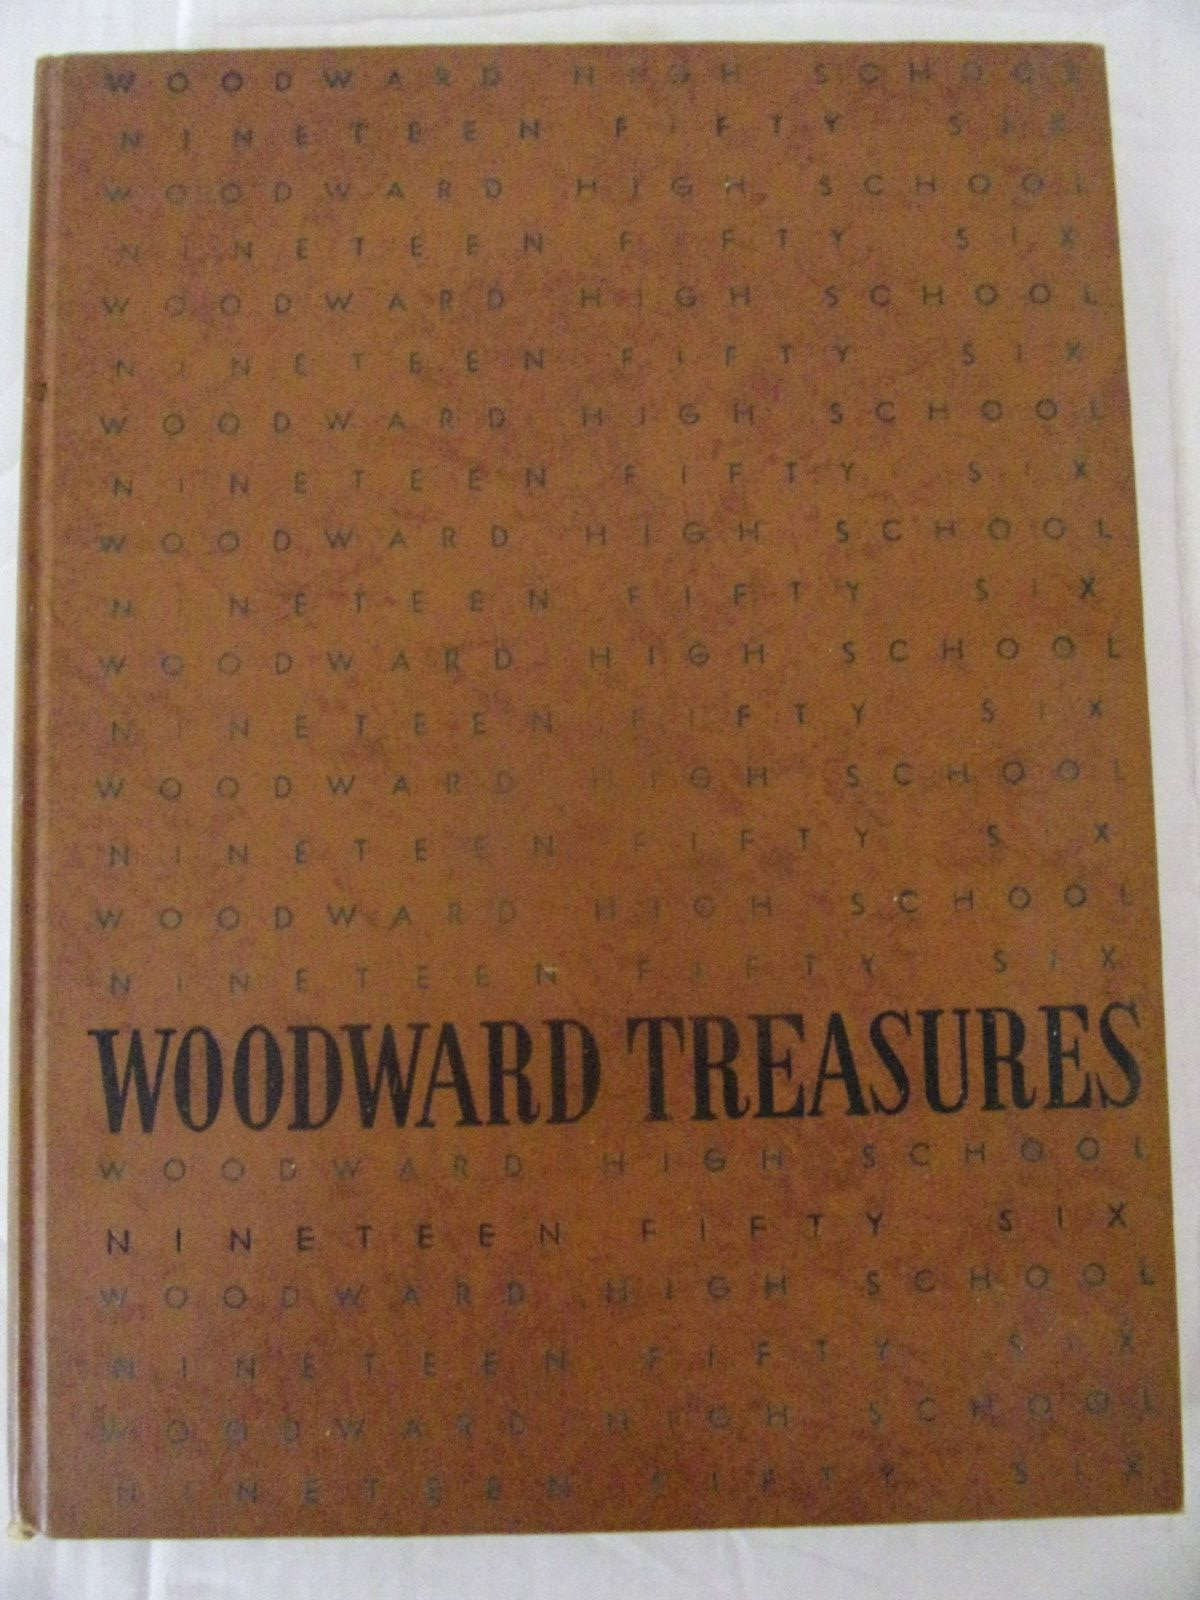 Yearbook - 1956 Woodward High School, Cincinatti, Ohio = Woodward Treasures